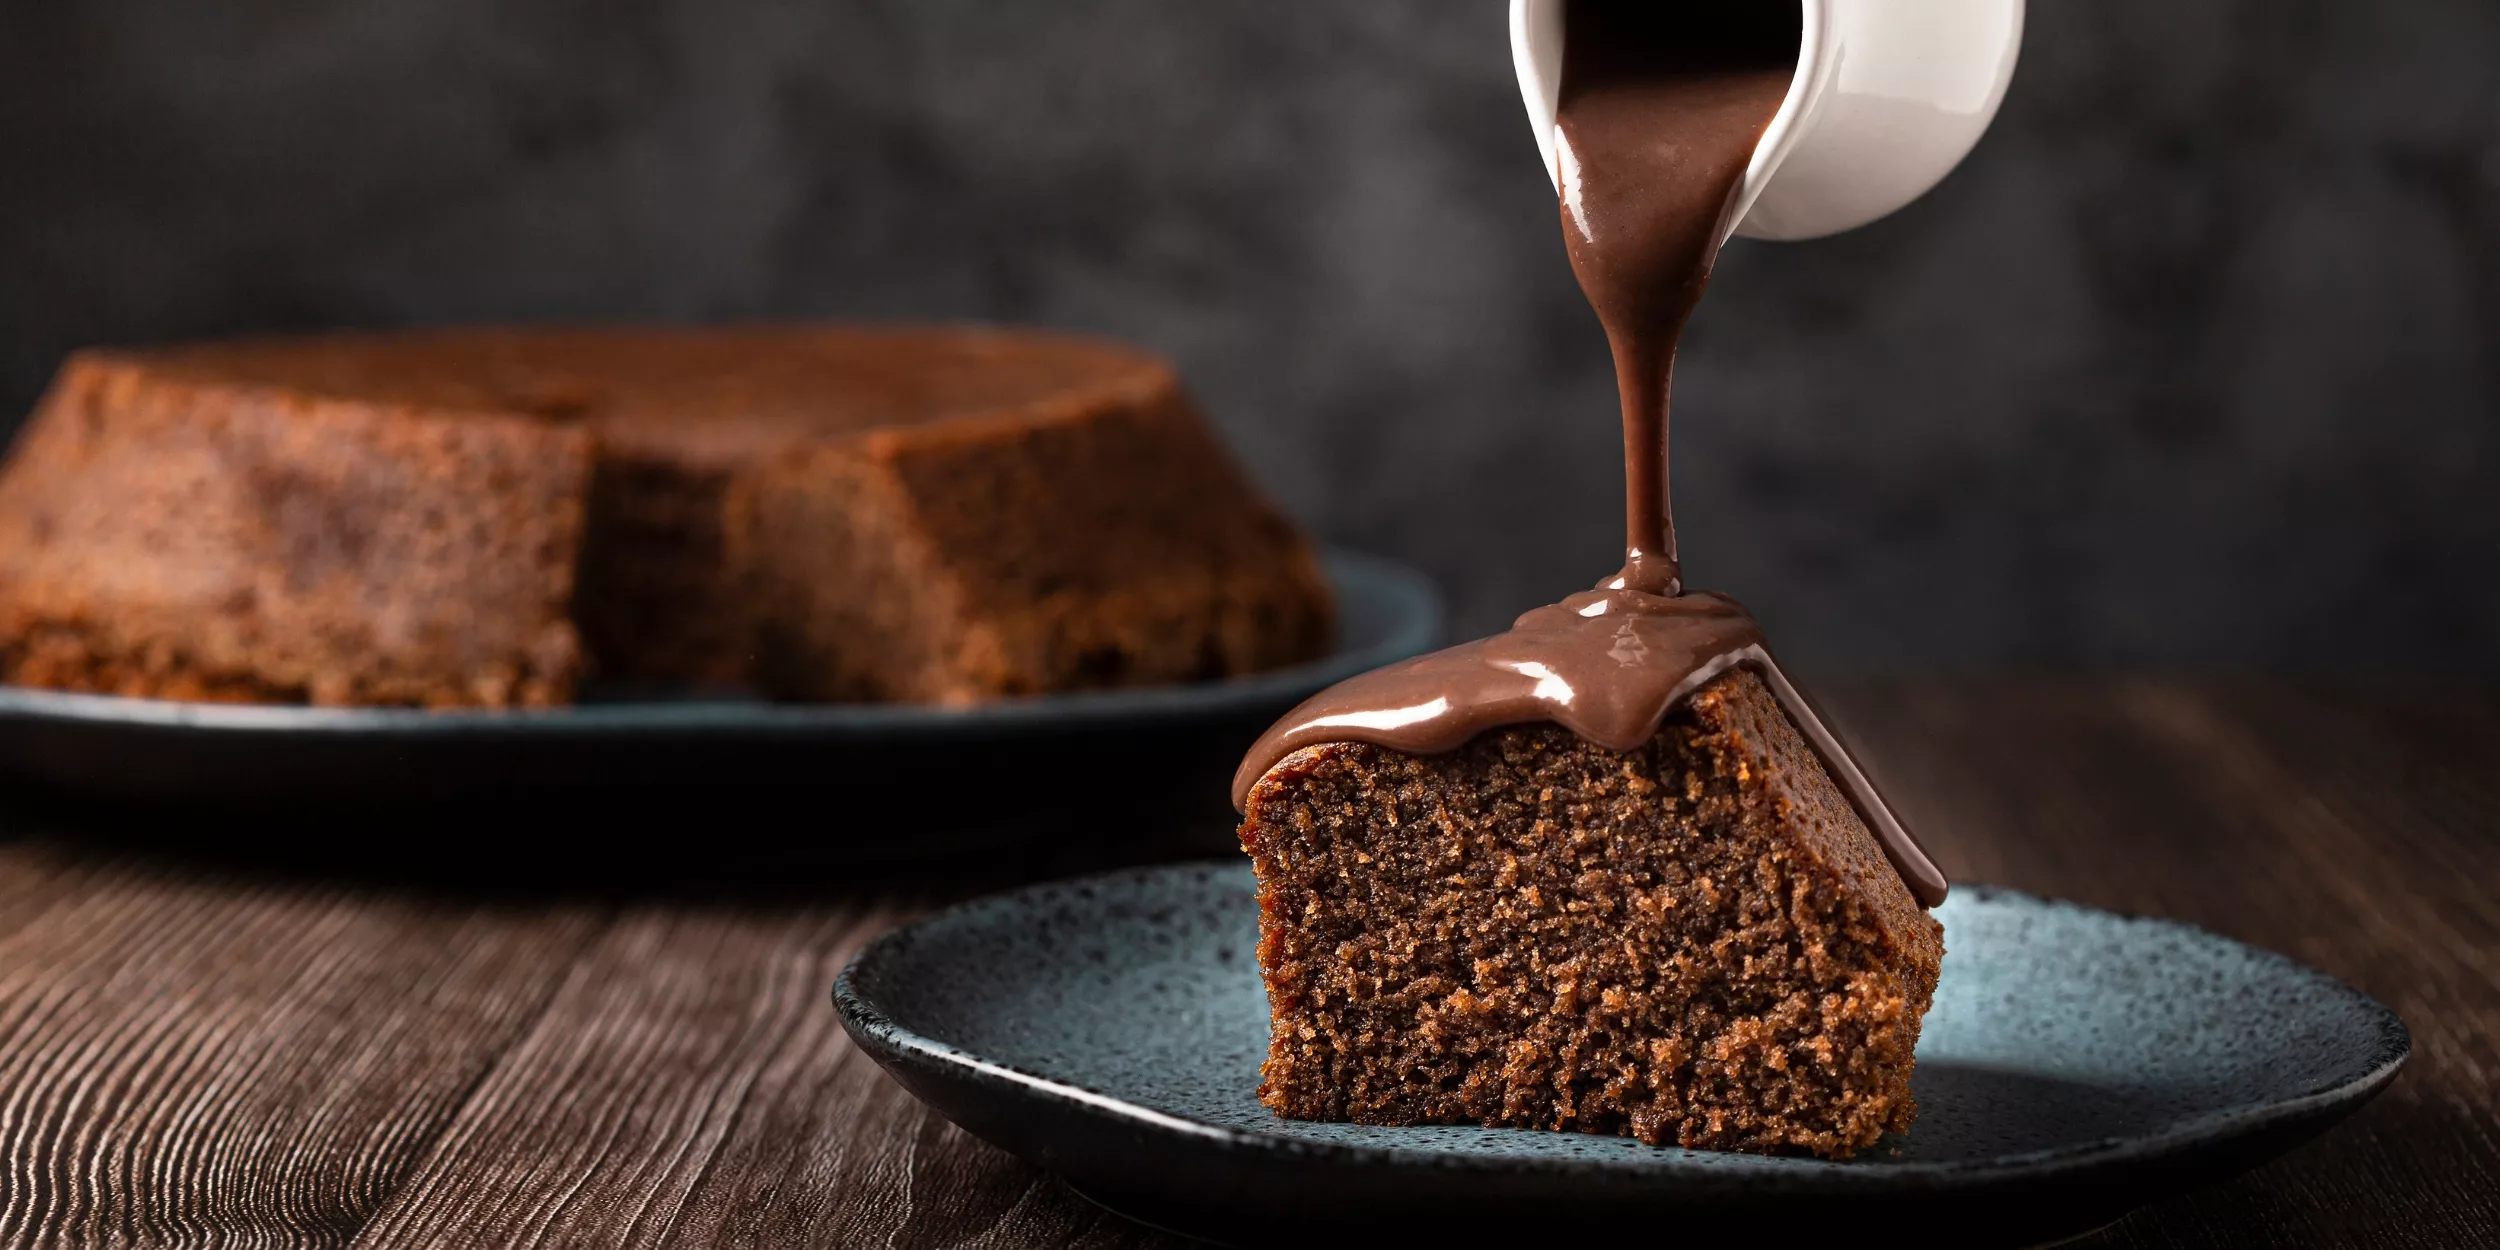 A imagem mostra um pedaço de bolo de chocolate em primeiro plano, logo atrás está o bolo completo. Acima do pedaço de bolo tem um recipiente derramado calda de chocolate.